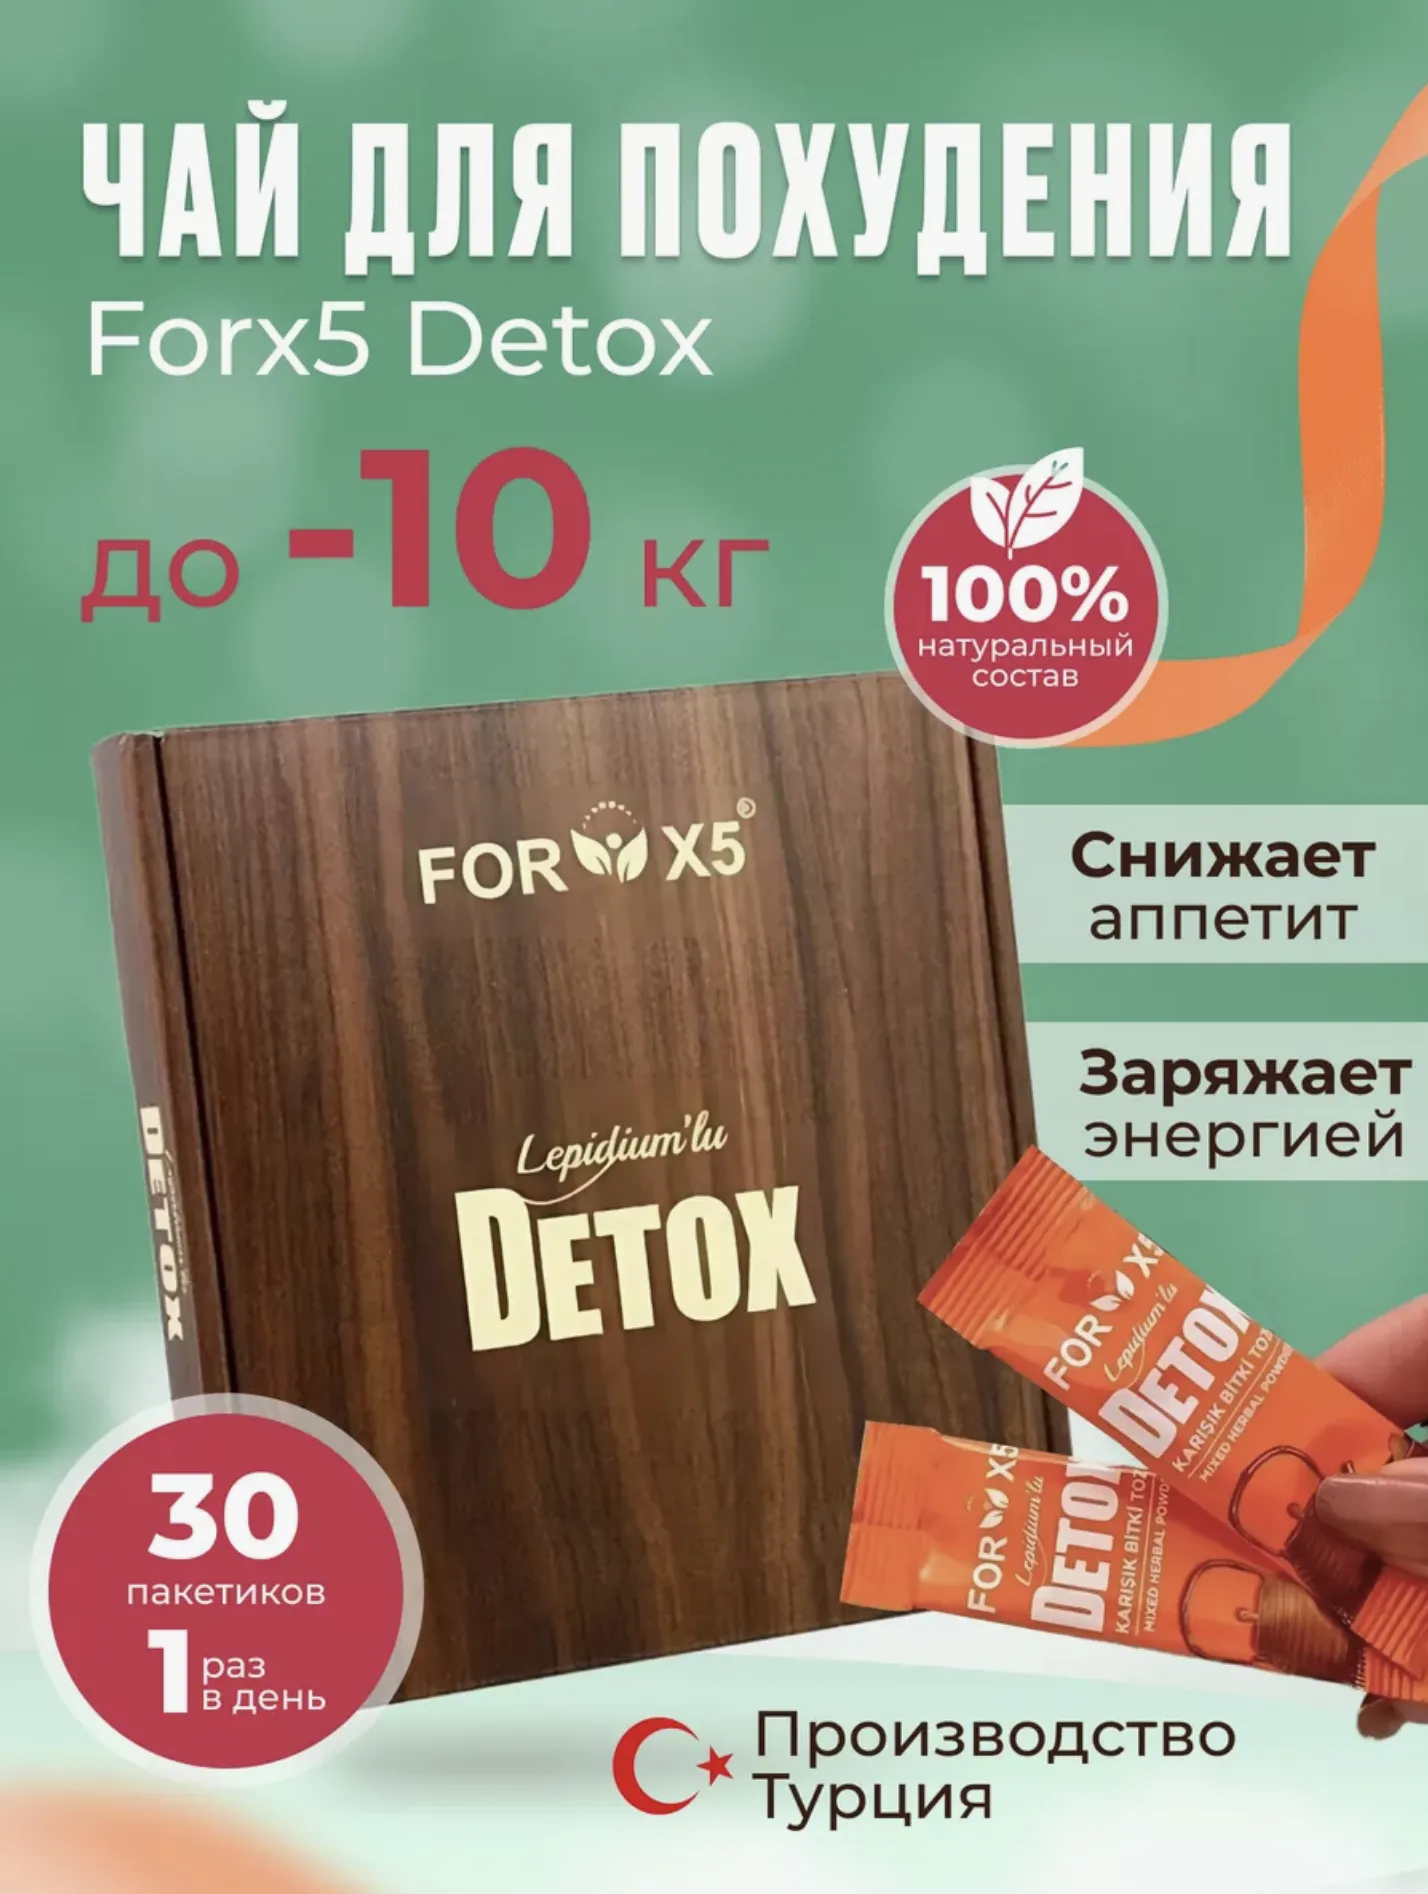 Порошковый детокс чай в порционных пакетиках, 30 шт - "Forx5"#1